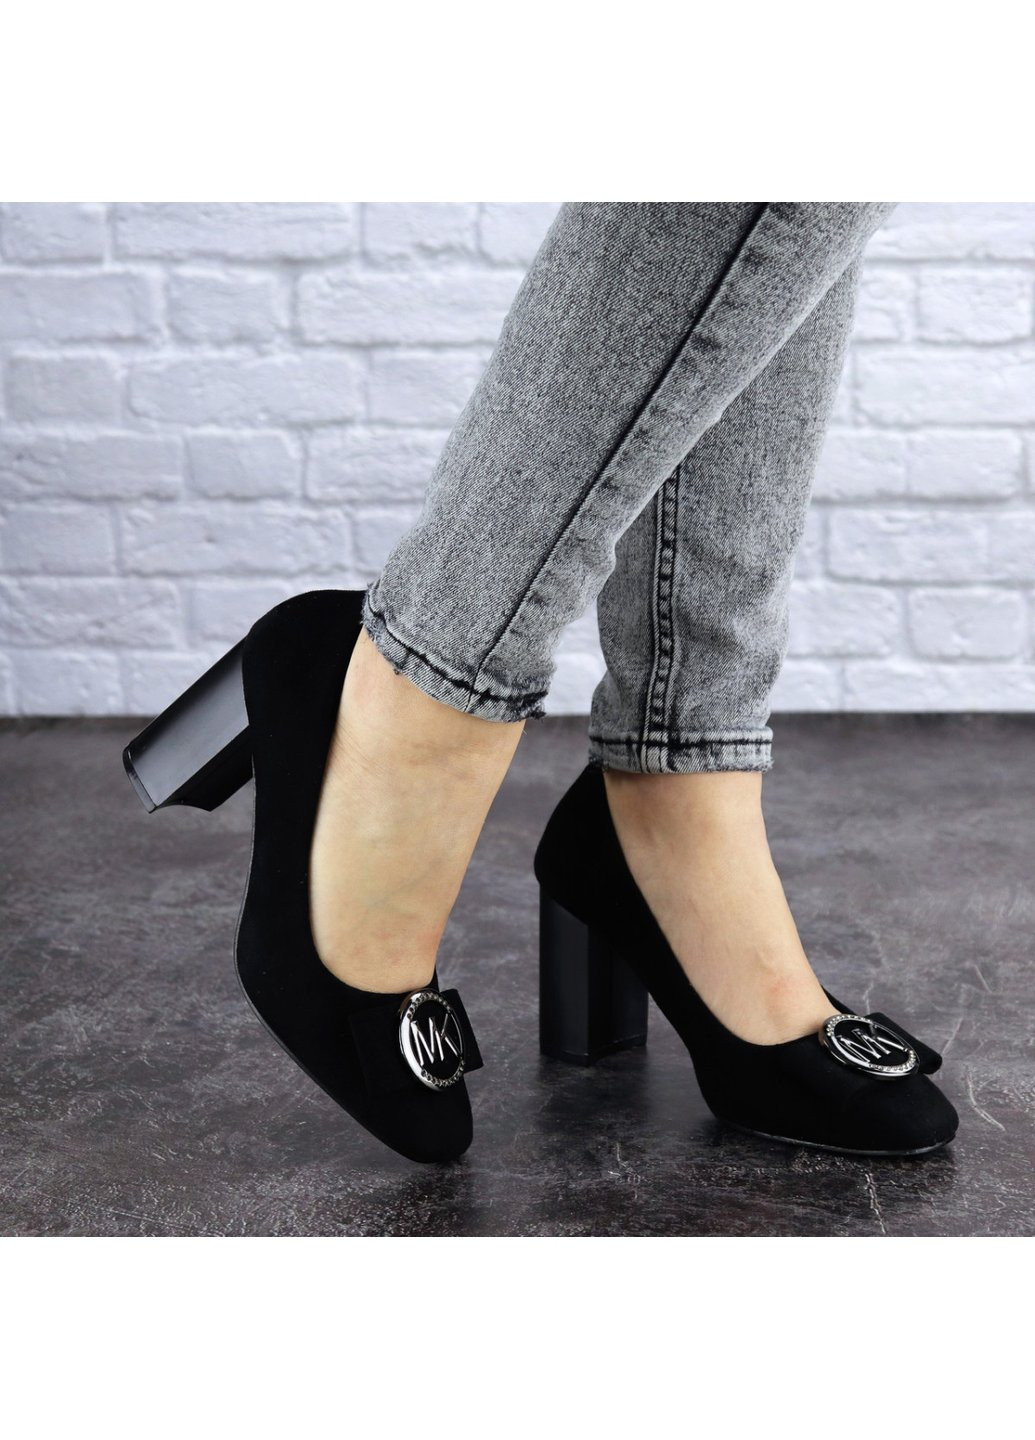 Туфли женские на каблуке Claire 1788 23 Черный Fashion